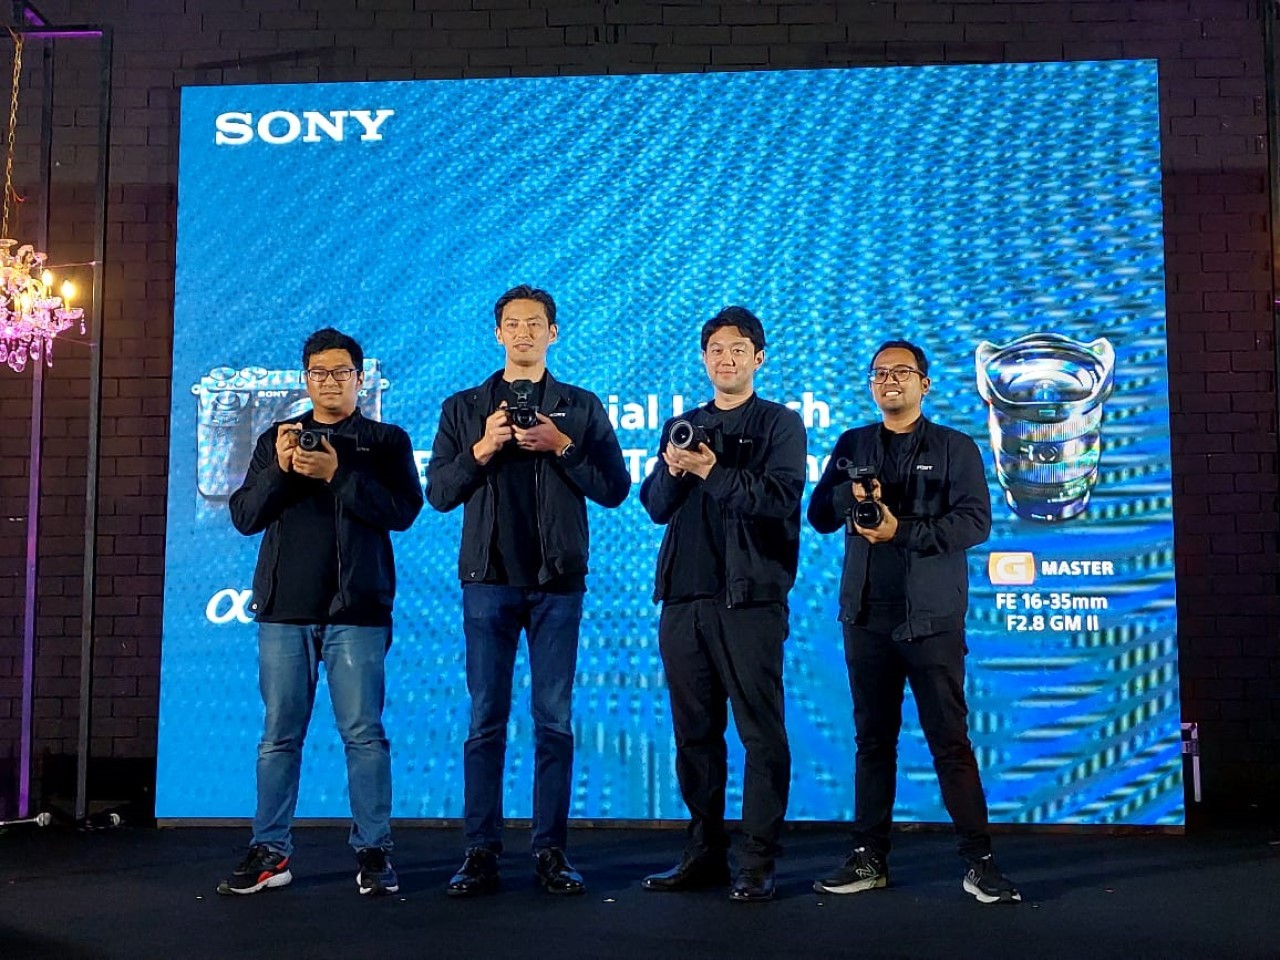 Kamera Sony Alpha APS-C 6700 Resmi Meluncur di Indonesia, Ini Harga dan Keunggulannya